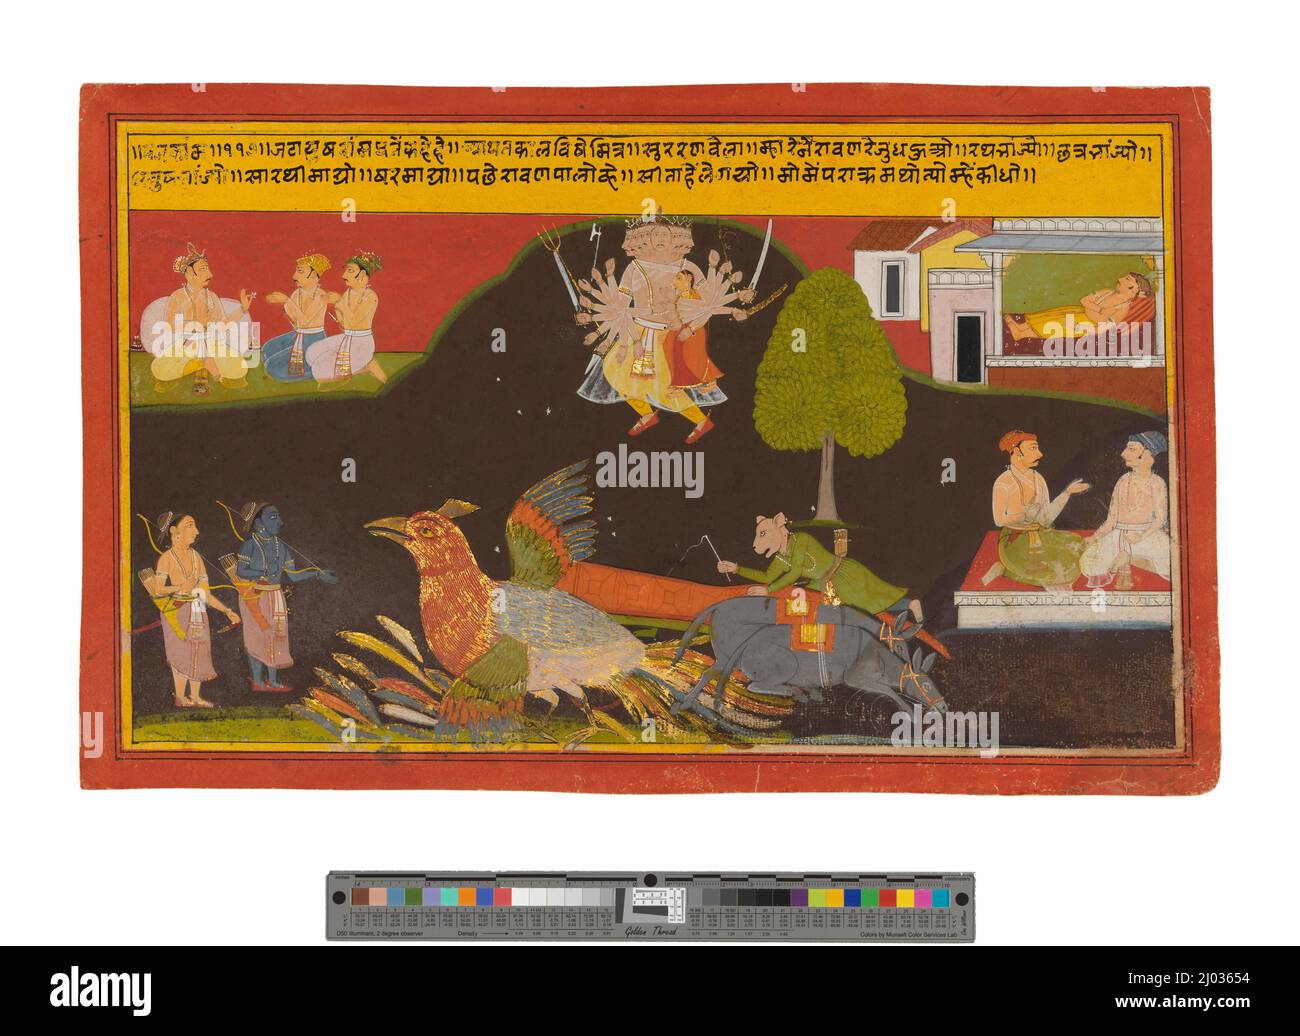 La Abducción de Sita, Folio de Ramayana (Aventuras de Rama). India, Rajasthan, Mewar, 1675-1700. Dibujos; acuarelas. Acuarela opaca sobre papel Foto de stock